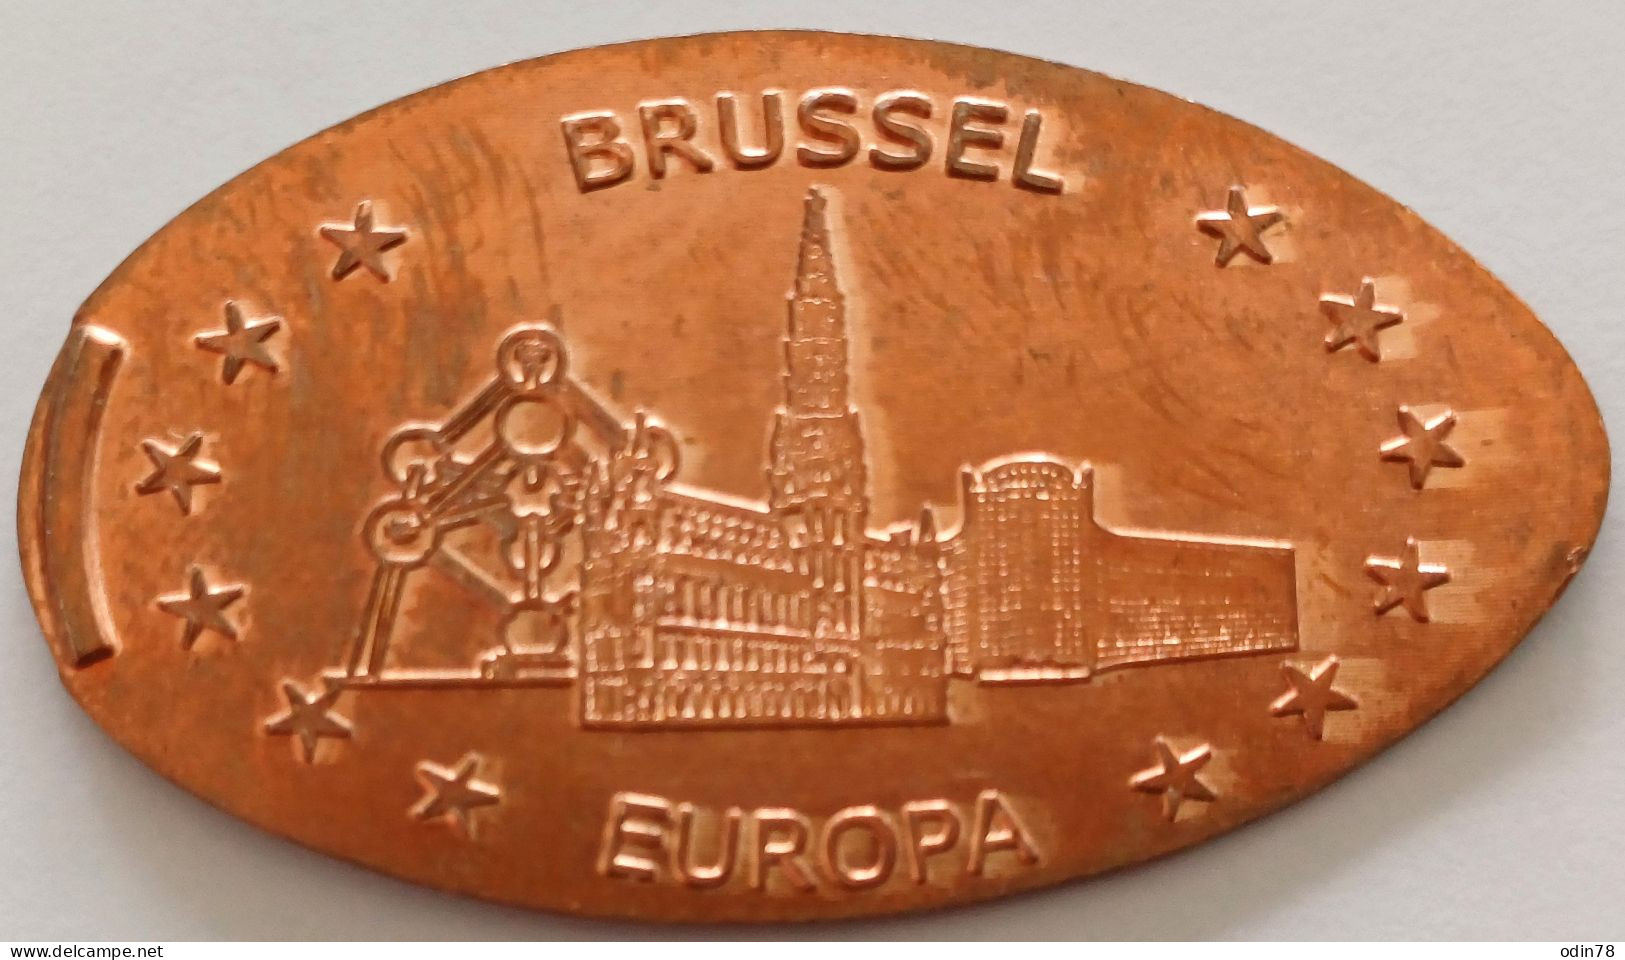 Pièce écrasée -   EUROPA  - BRUSSEL - Souvenir-Medaille (elongated Coins)